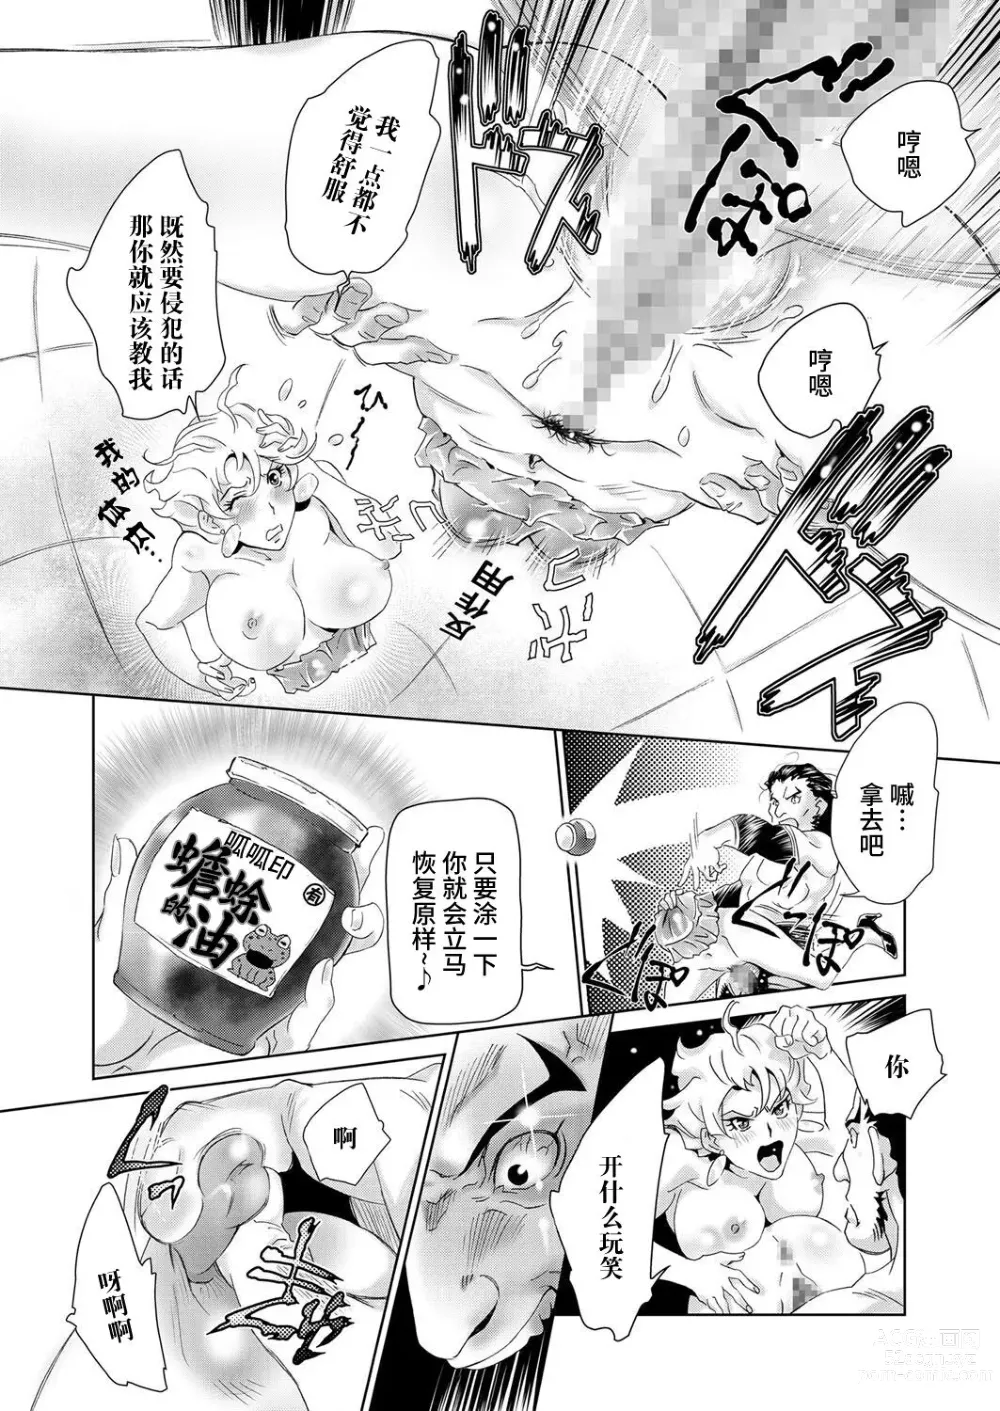 Page 4 of manga ギチギチ博士の異常な性癖